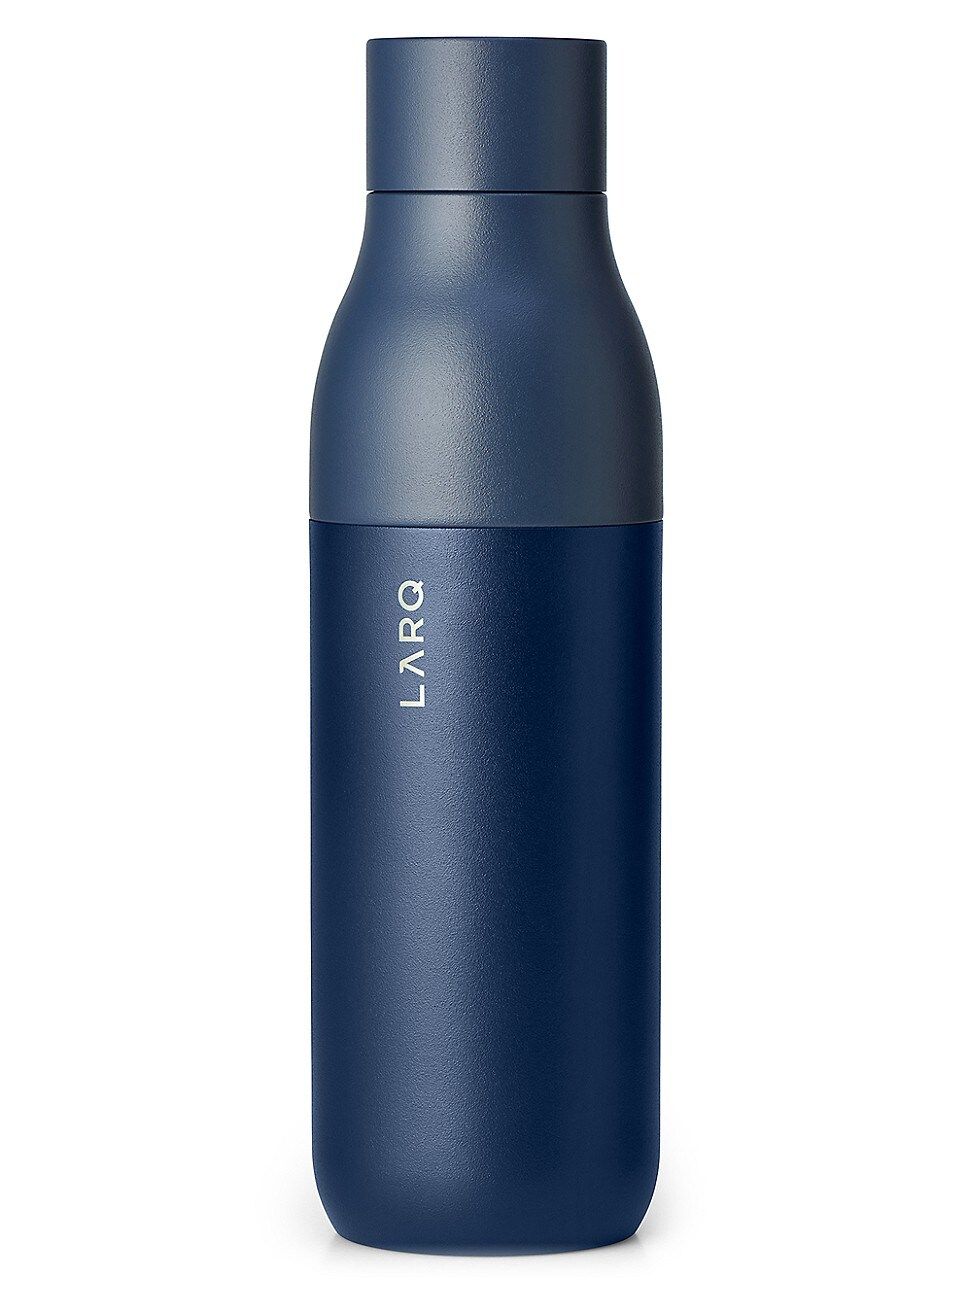 Monaco Blue Self-Sanitizing Water Bottle | Saks Fifth Avenue